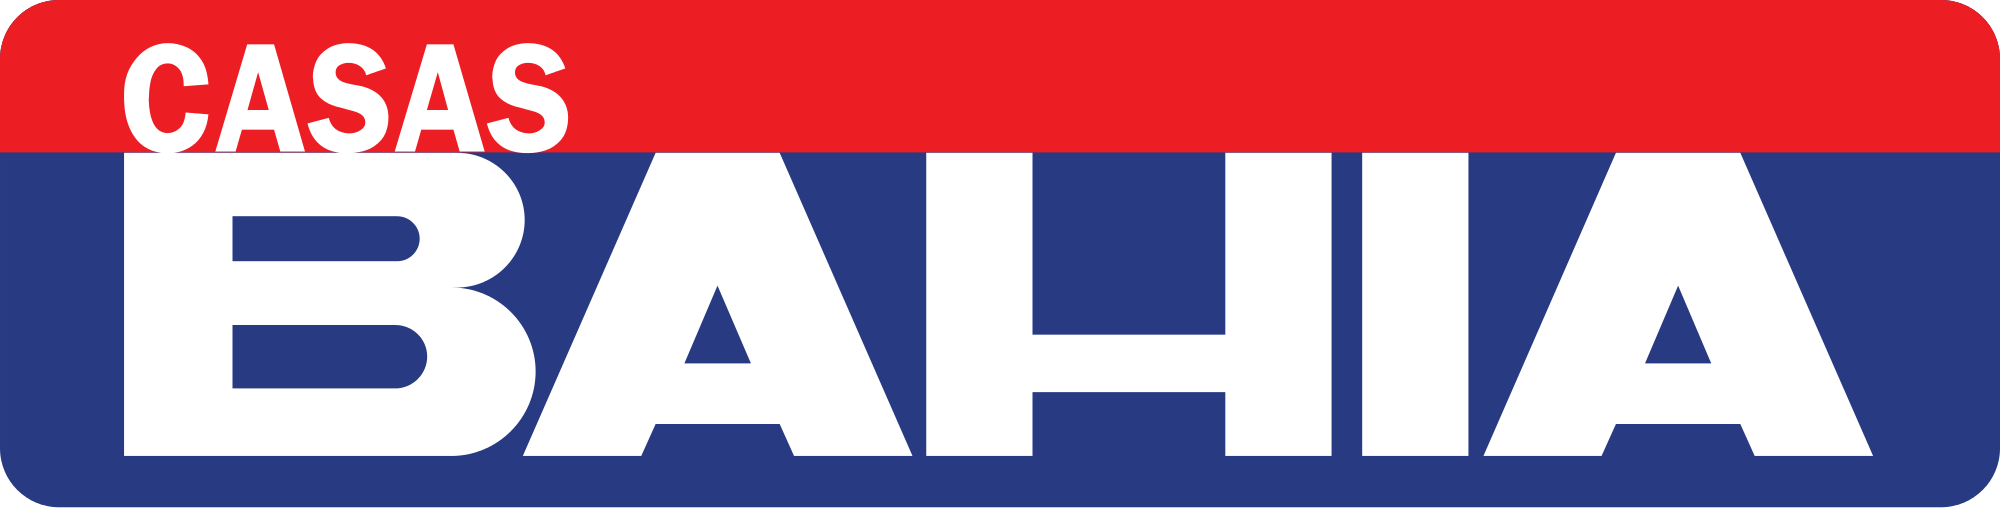 CASAS BAHIA 2015 Logo photo - 1